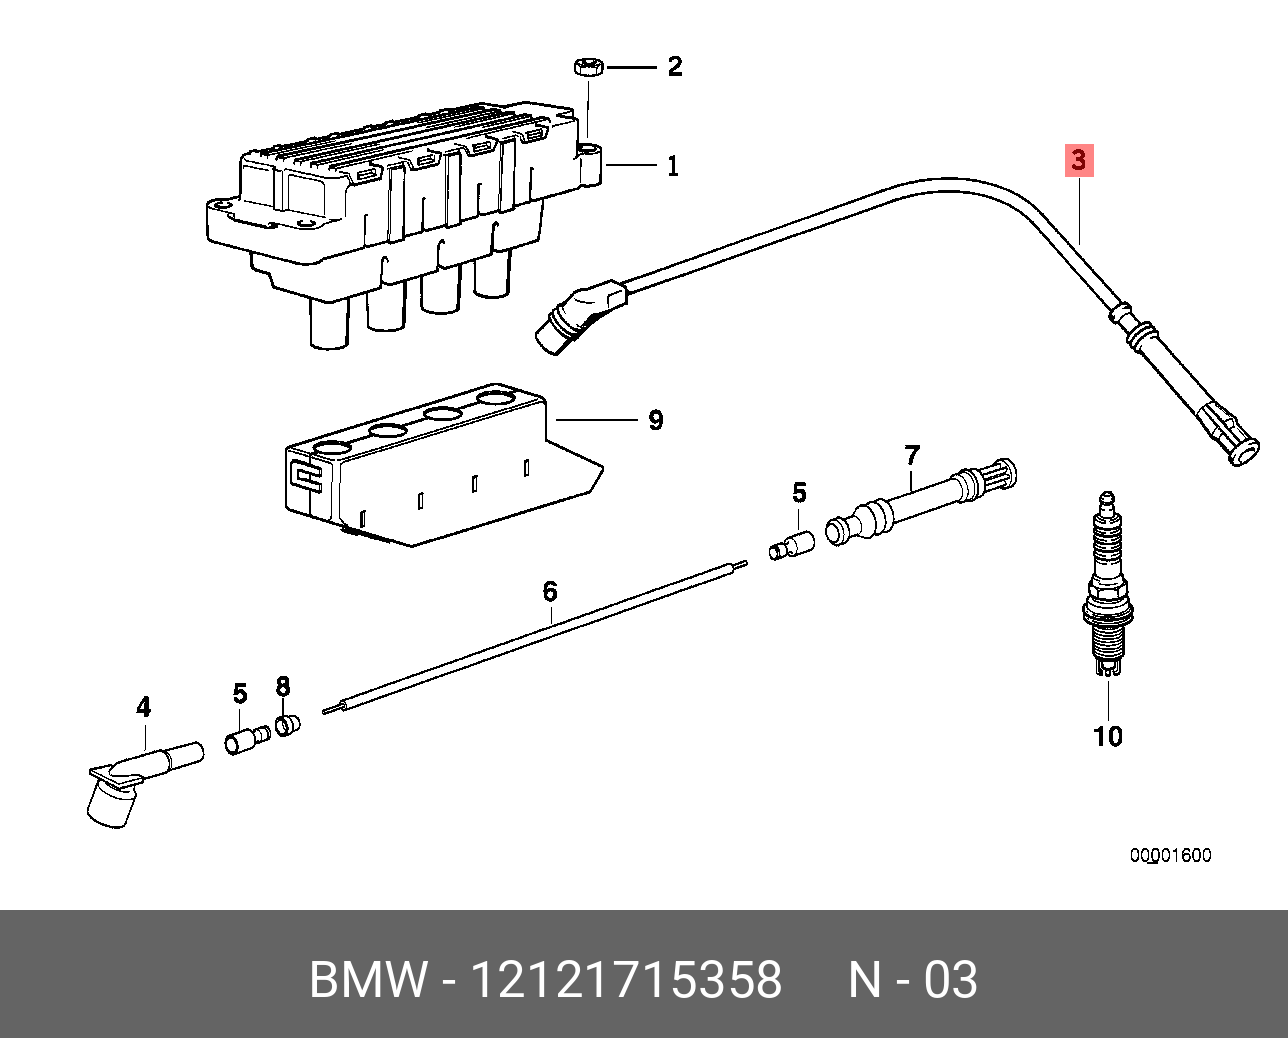 Катушка зажигания BMW e23. Катушка зажигания e36 m43. Провода зажигания для BMW e34. Катушка зажигания BMW e36 порядок. Зажигания бмв е36